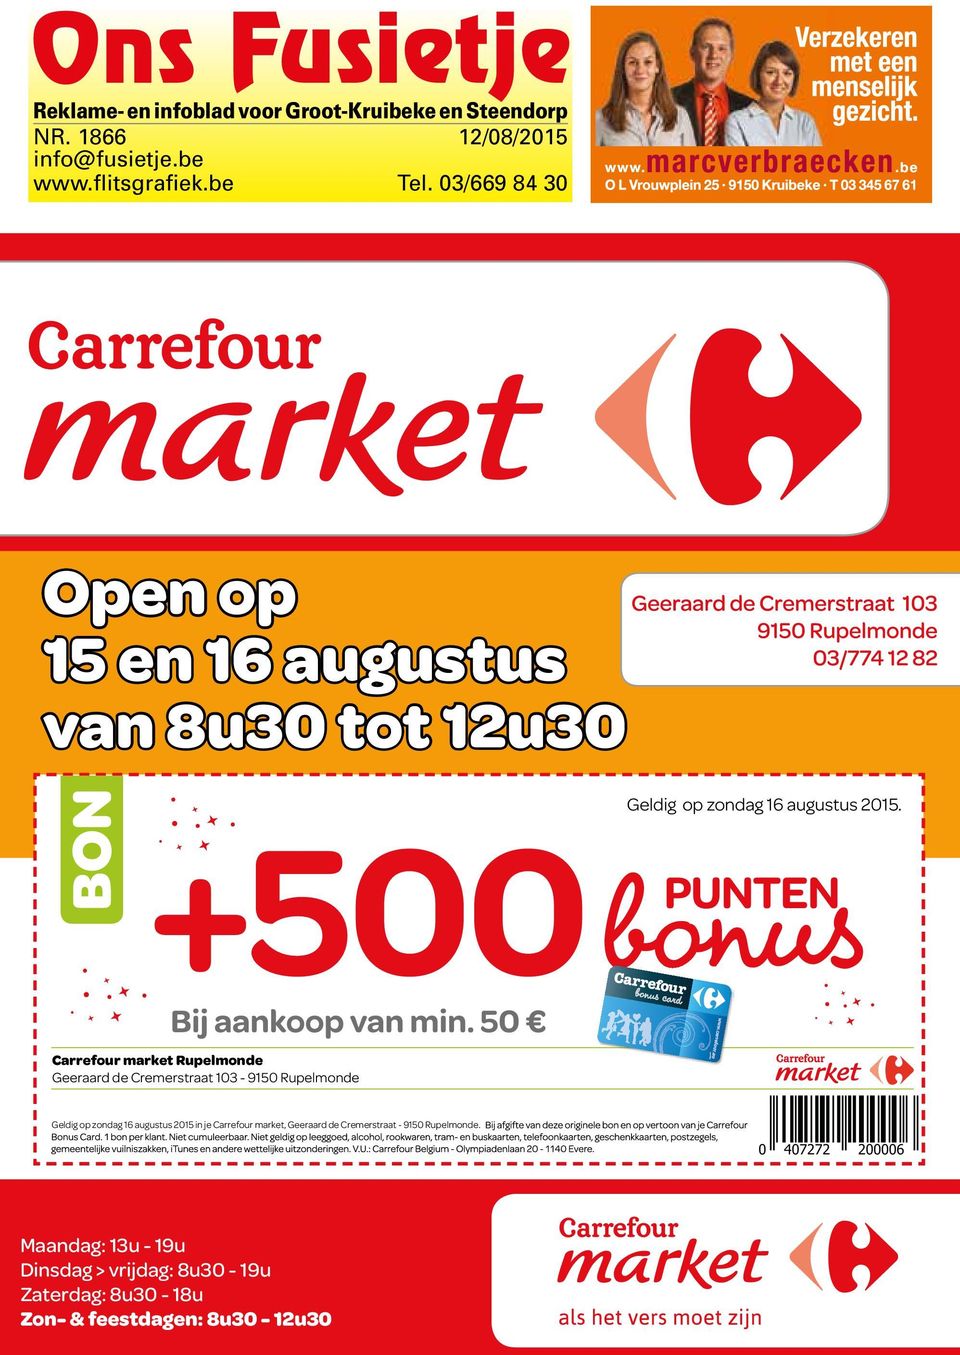 Carrefour market Rupelmonde Geeraard de Cremerstraat 103-9150 Rupelmonde Geldig op zondag 16 augustus 2015 in je Carrefour